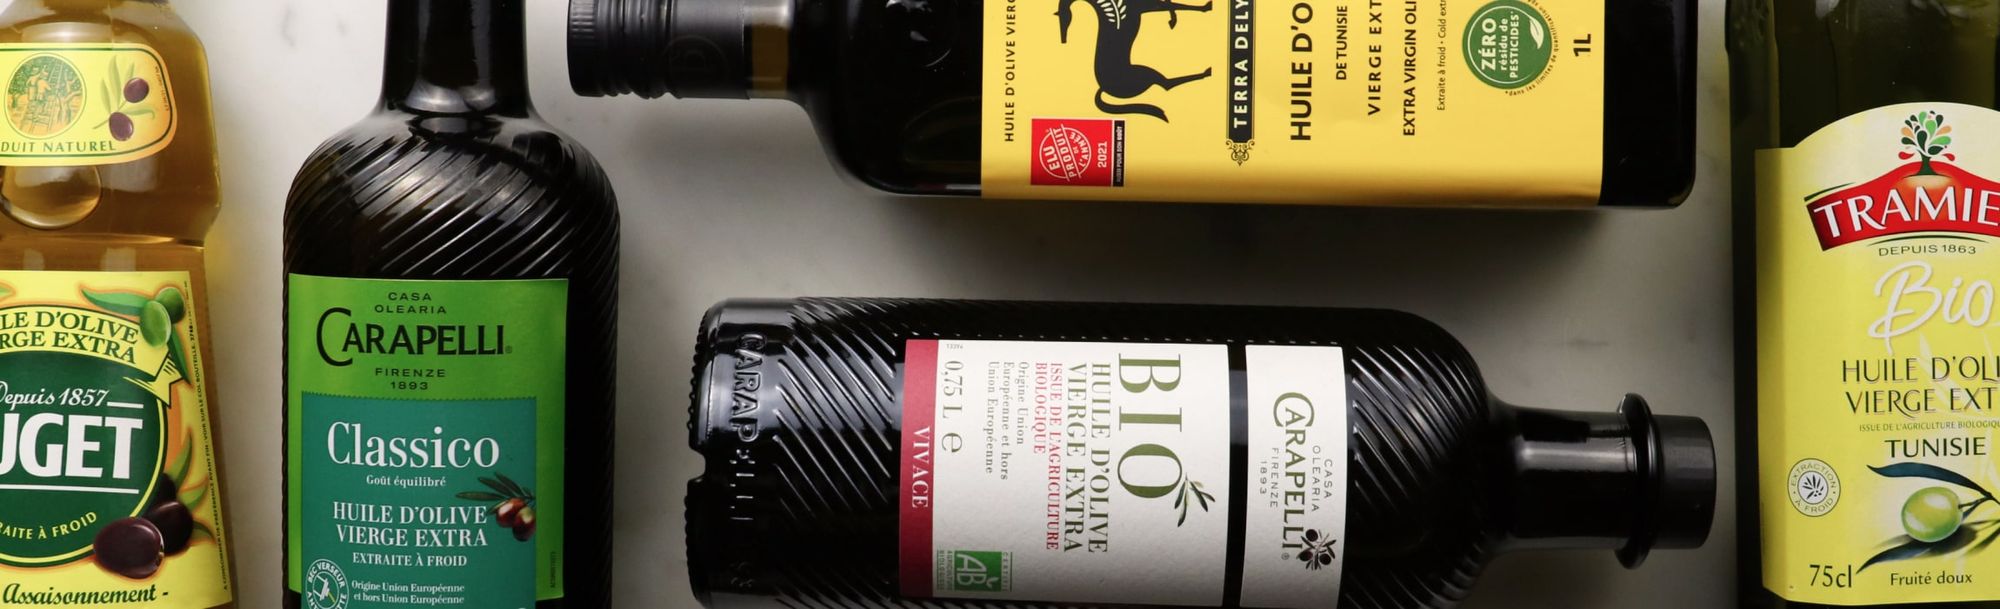 Une bonne huile d'olive pour un bon pesto